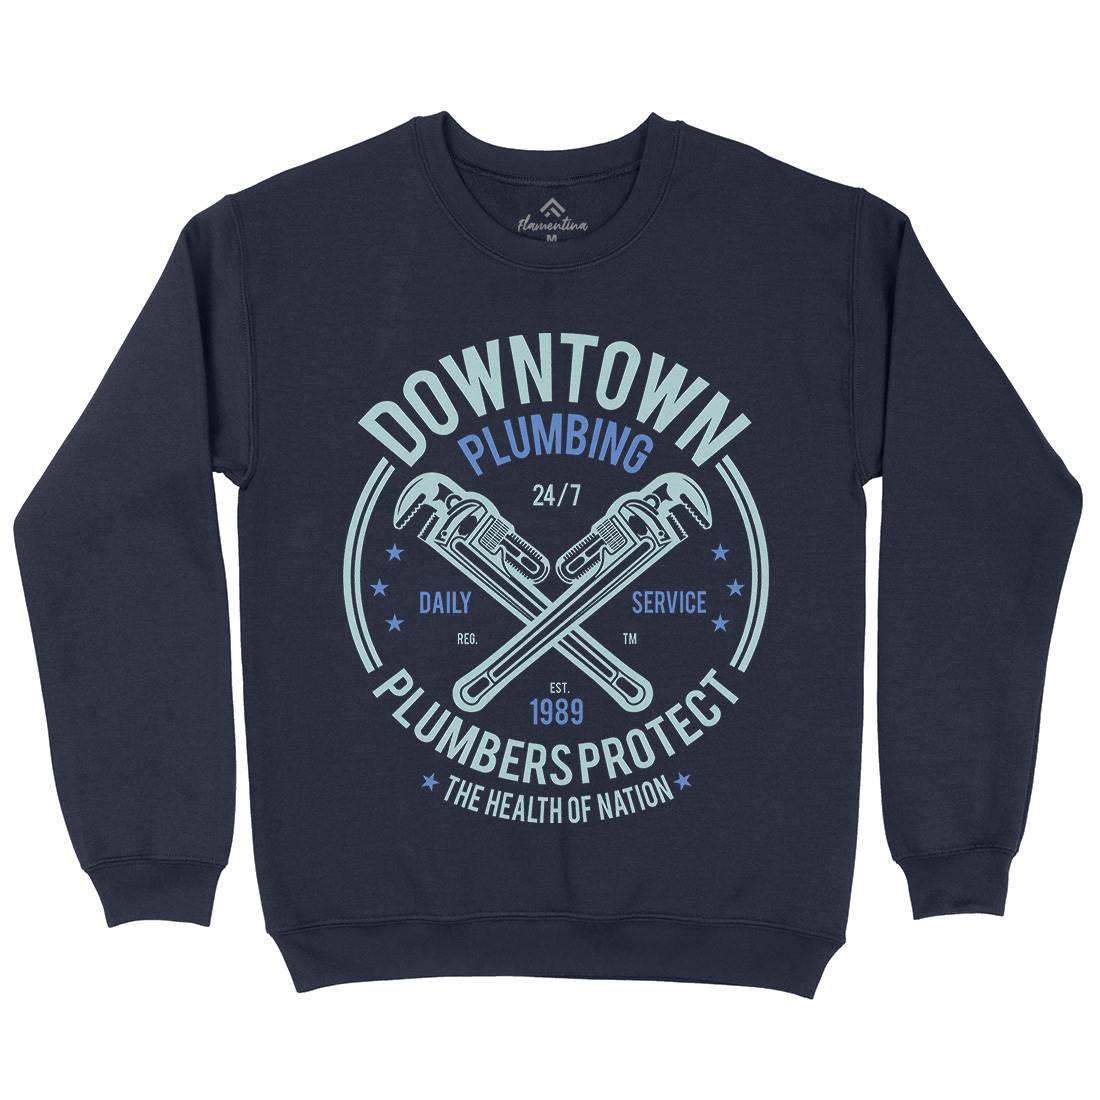 Downtown Plumbing Mens Crew Neck Sweatshirt Work A046